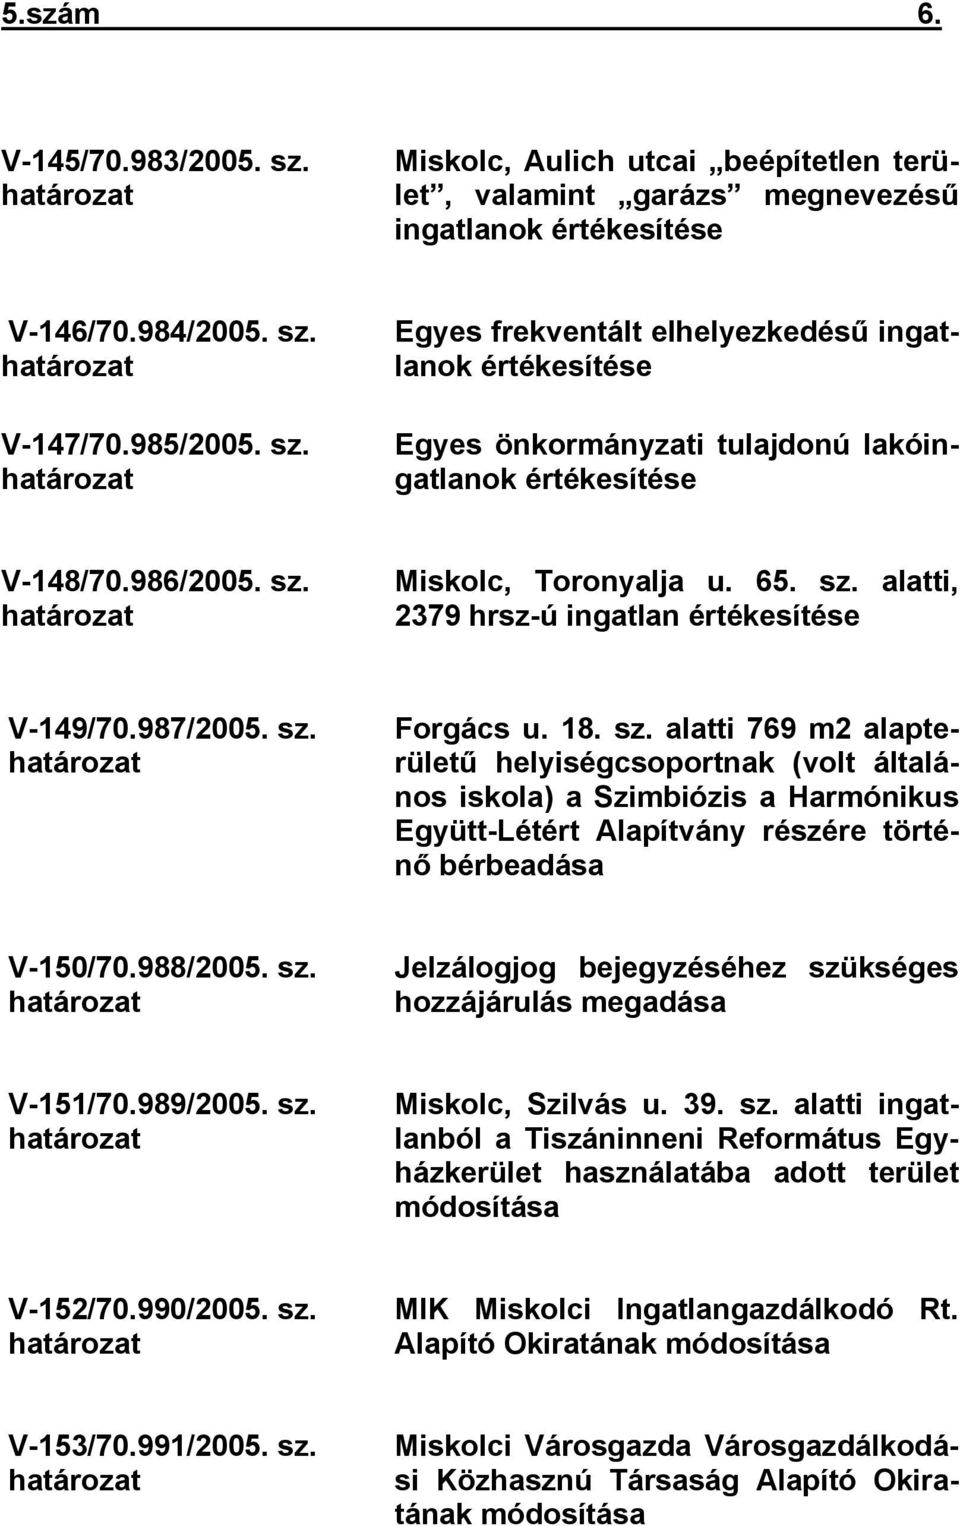 988/2005. sz. határozat Jelzálogjog bejegyzéséhez szükséges hozzájárulás megadása V-151/70.989/2005. sz. határozat Miskolc, Szilvás u. 39. sz. alatti ingatlanból a Tiszáninneni Református Egyházkerület használatába adott terület módosítása V-152/70.